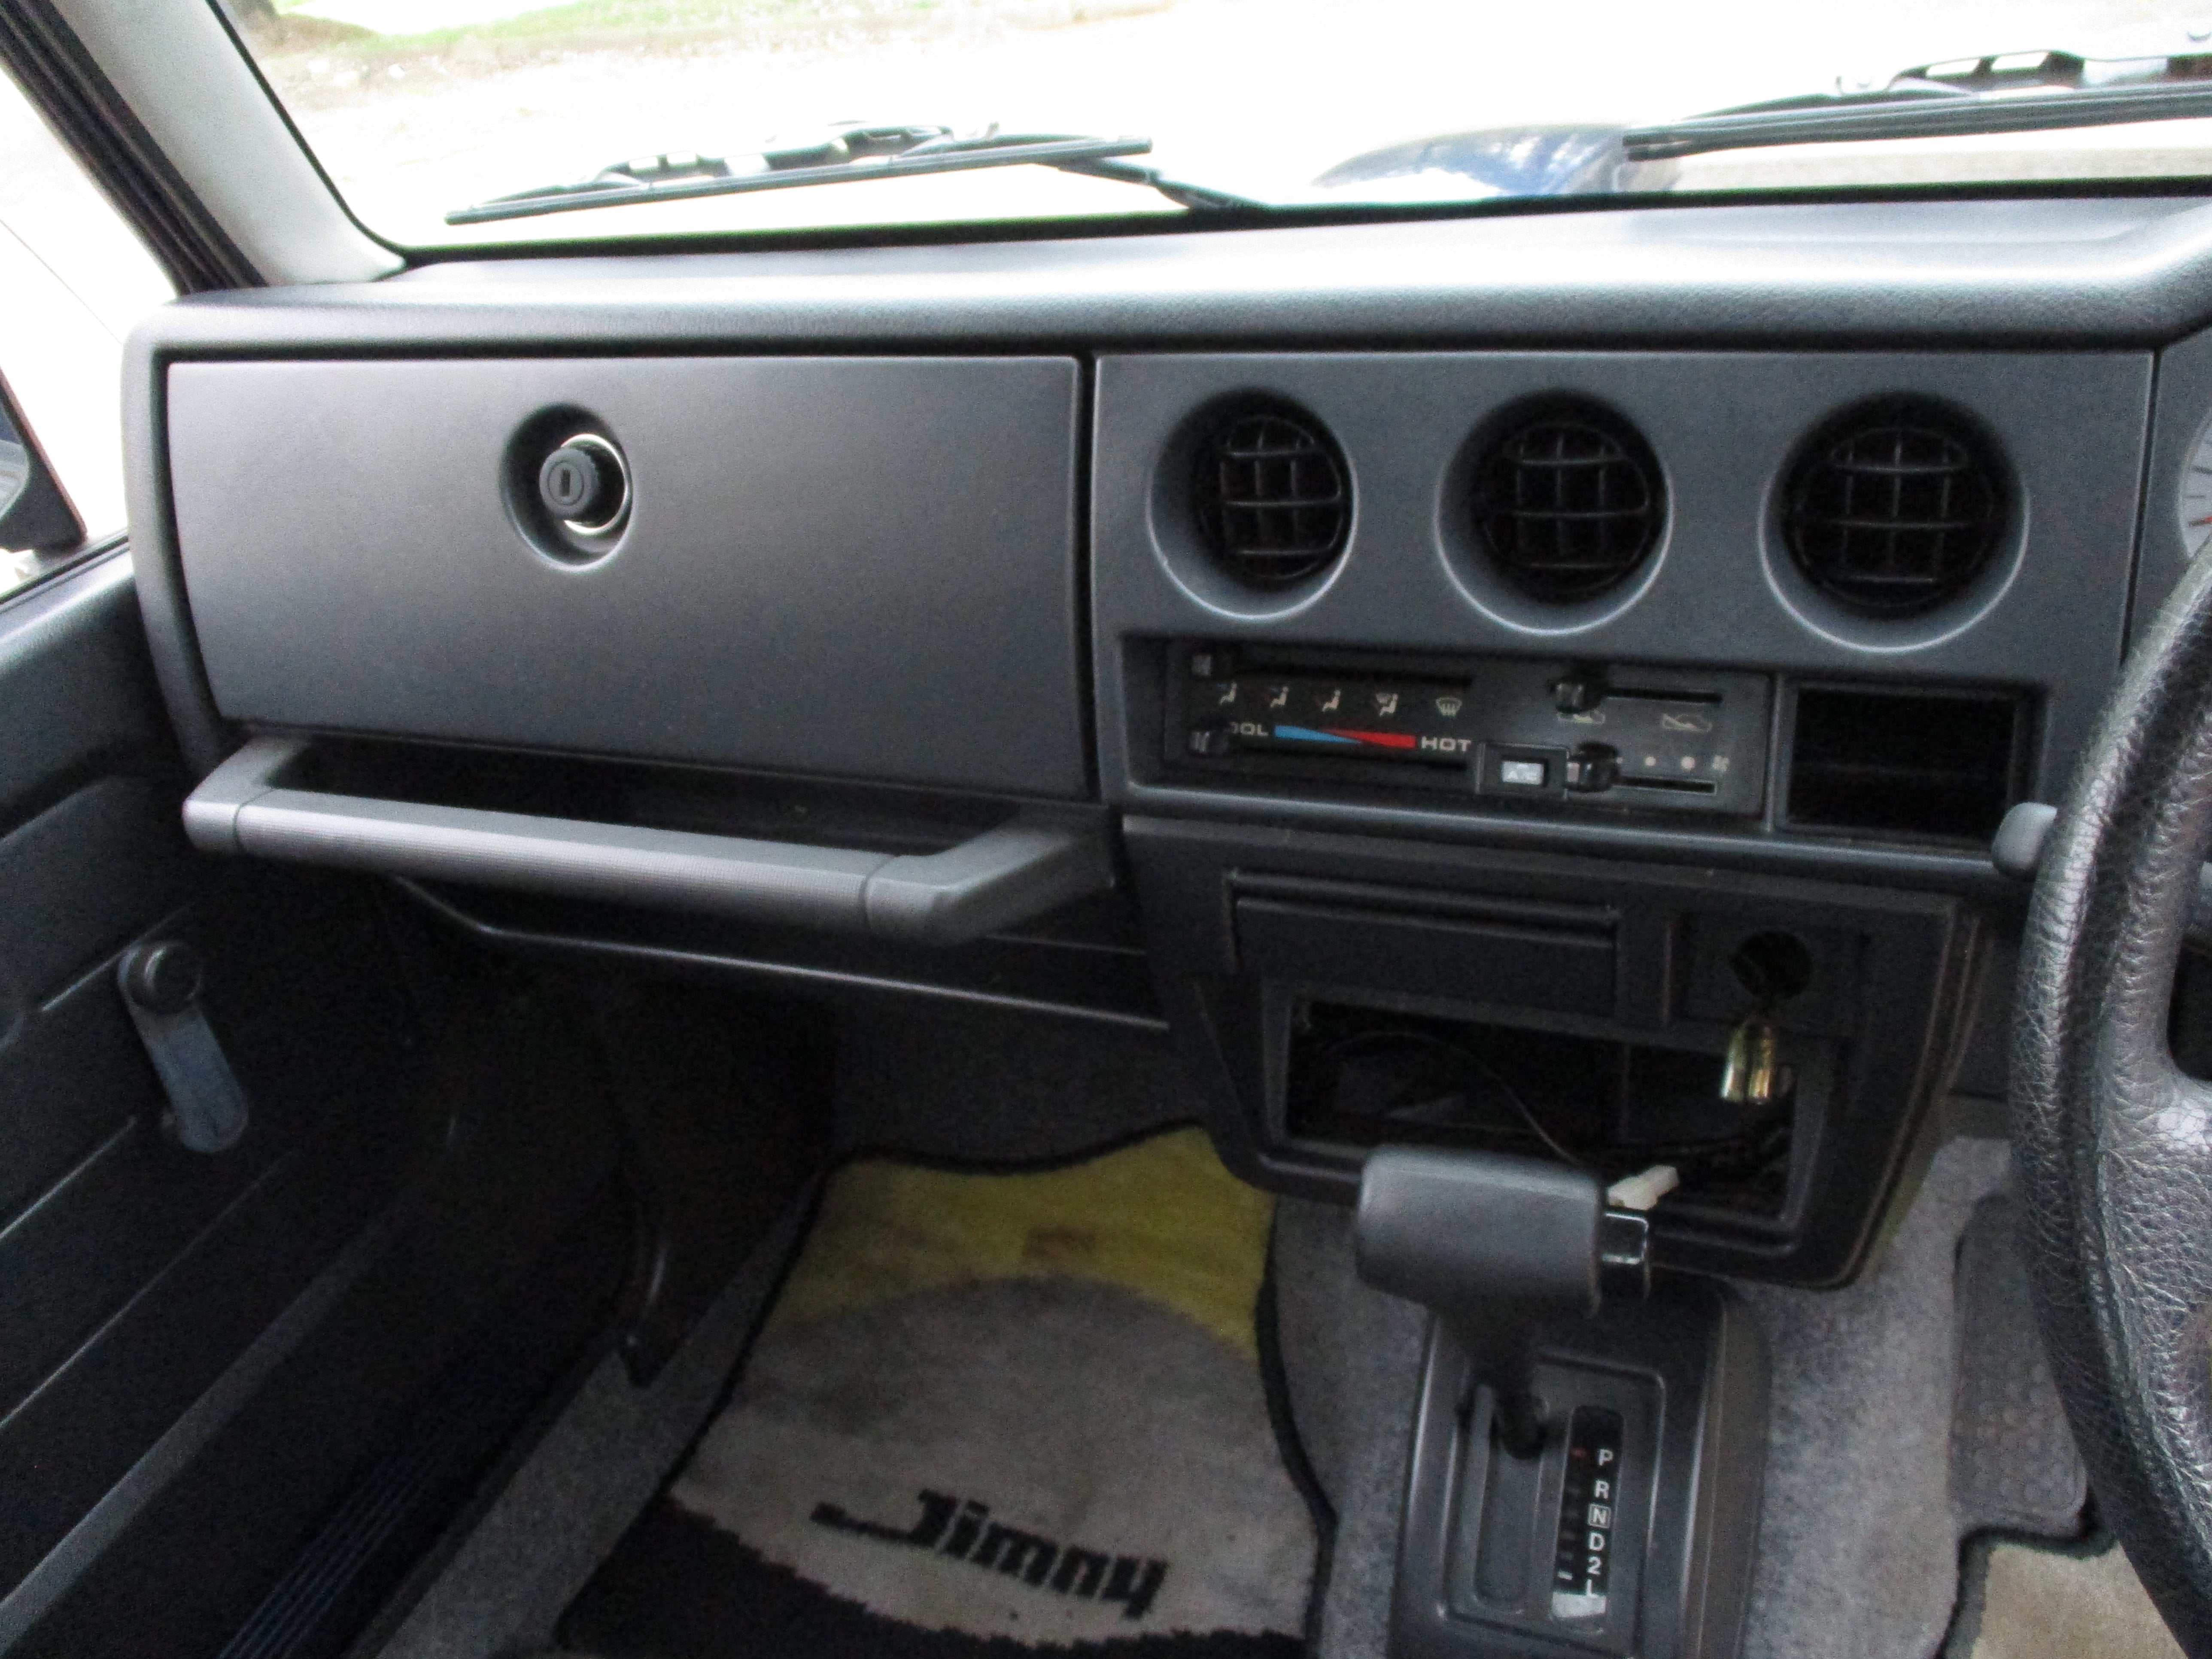 JDM 96 Suzuki Jimny Coily JA22 RHD Turbo 4x4 SUV